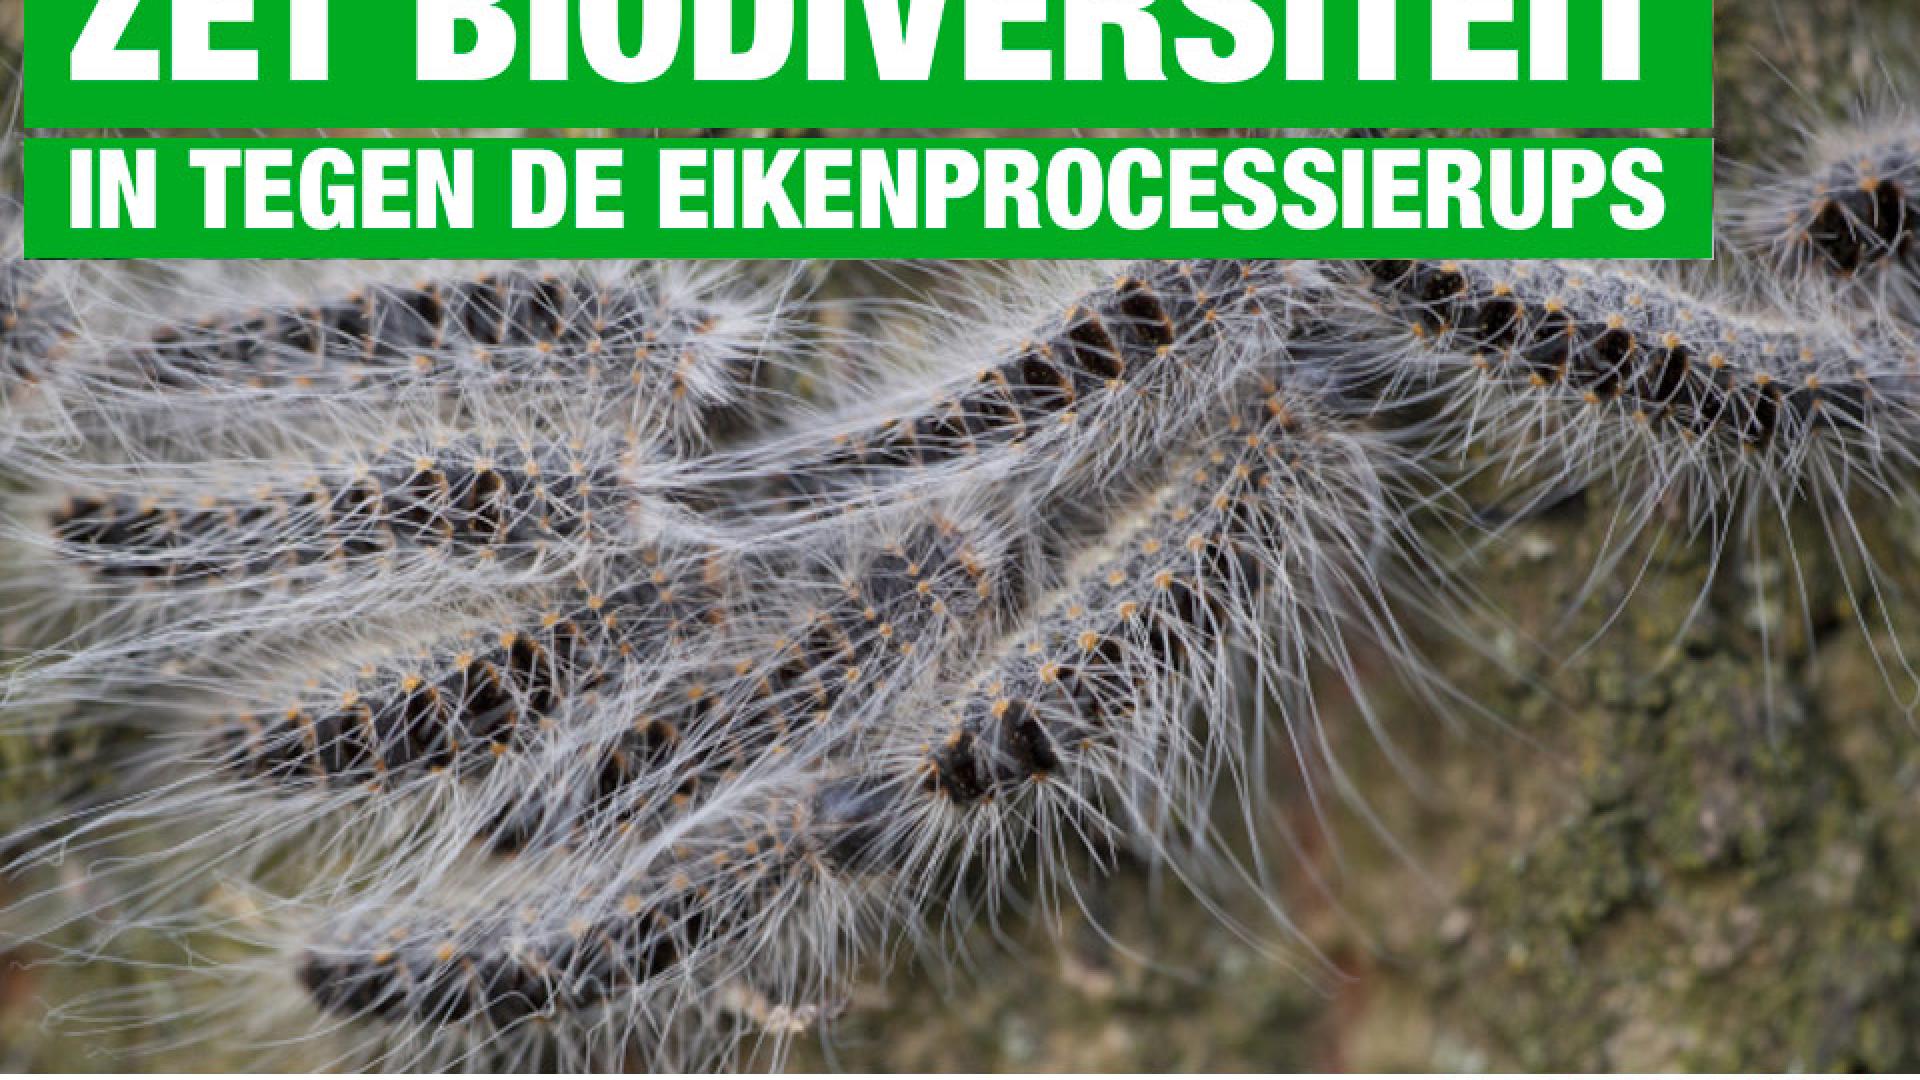 Vragen aan college: Zet biodiversiteit in tegen de eikenprocessierupsen - 10 juni 2020